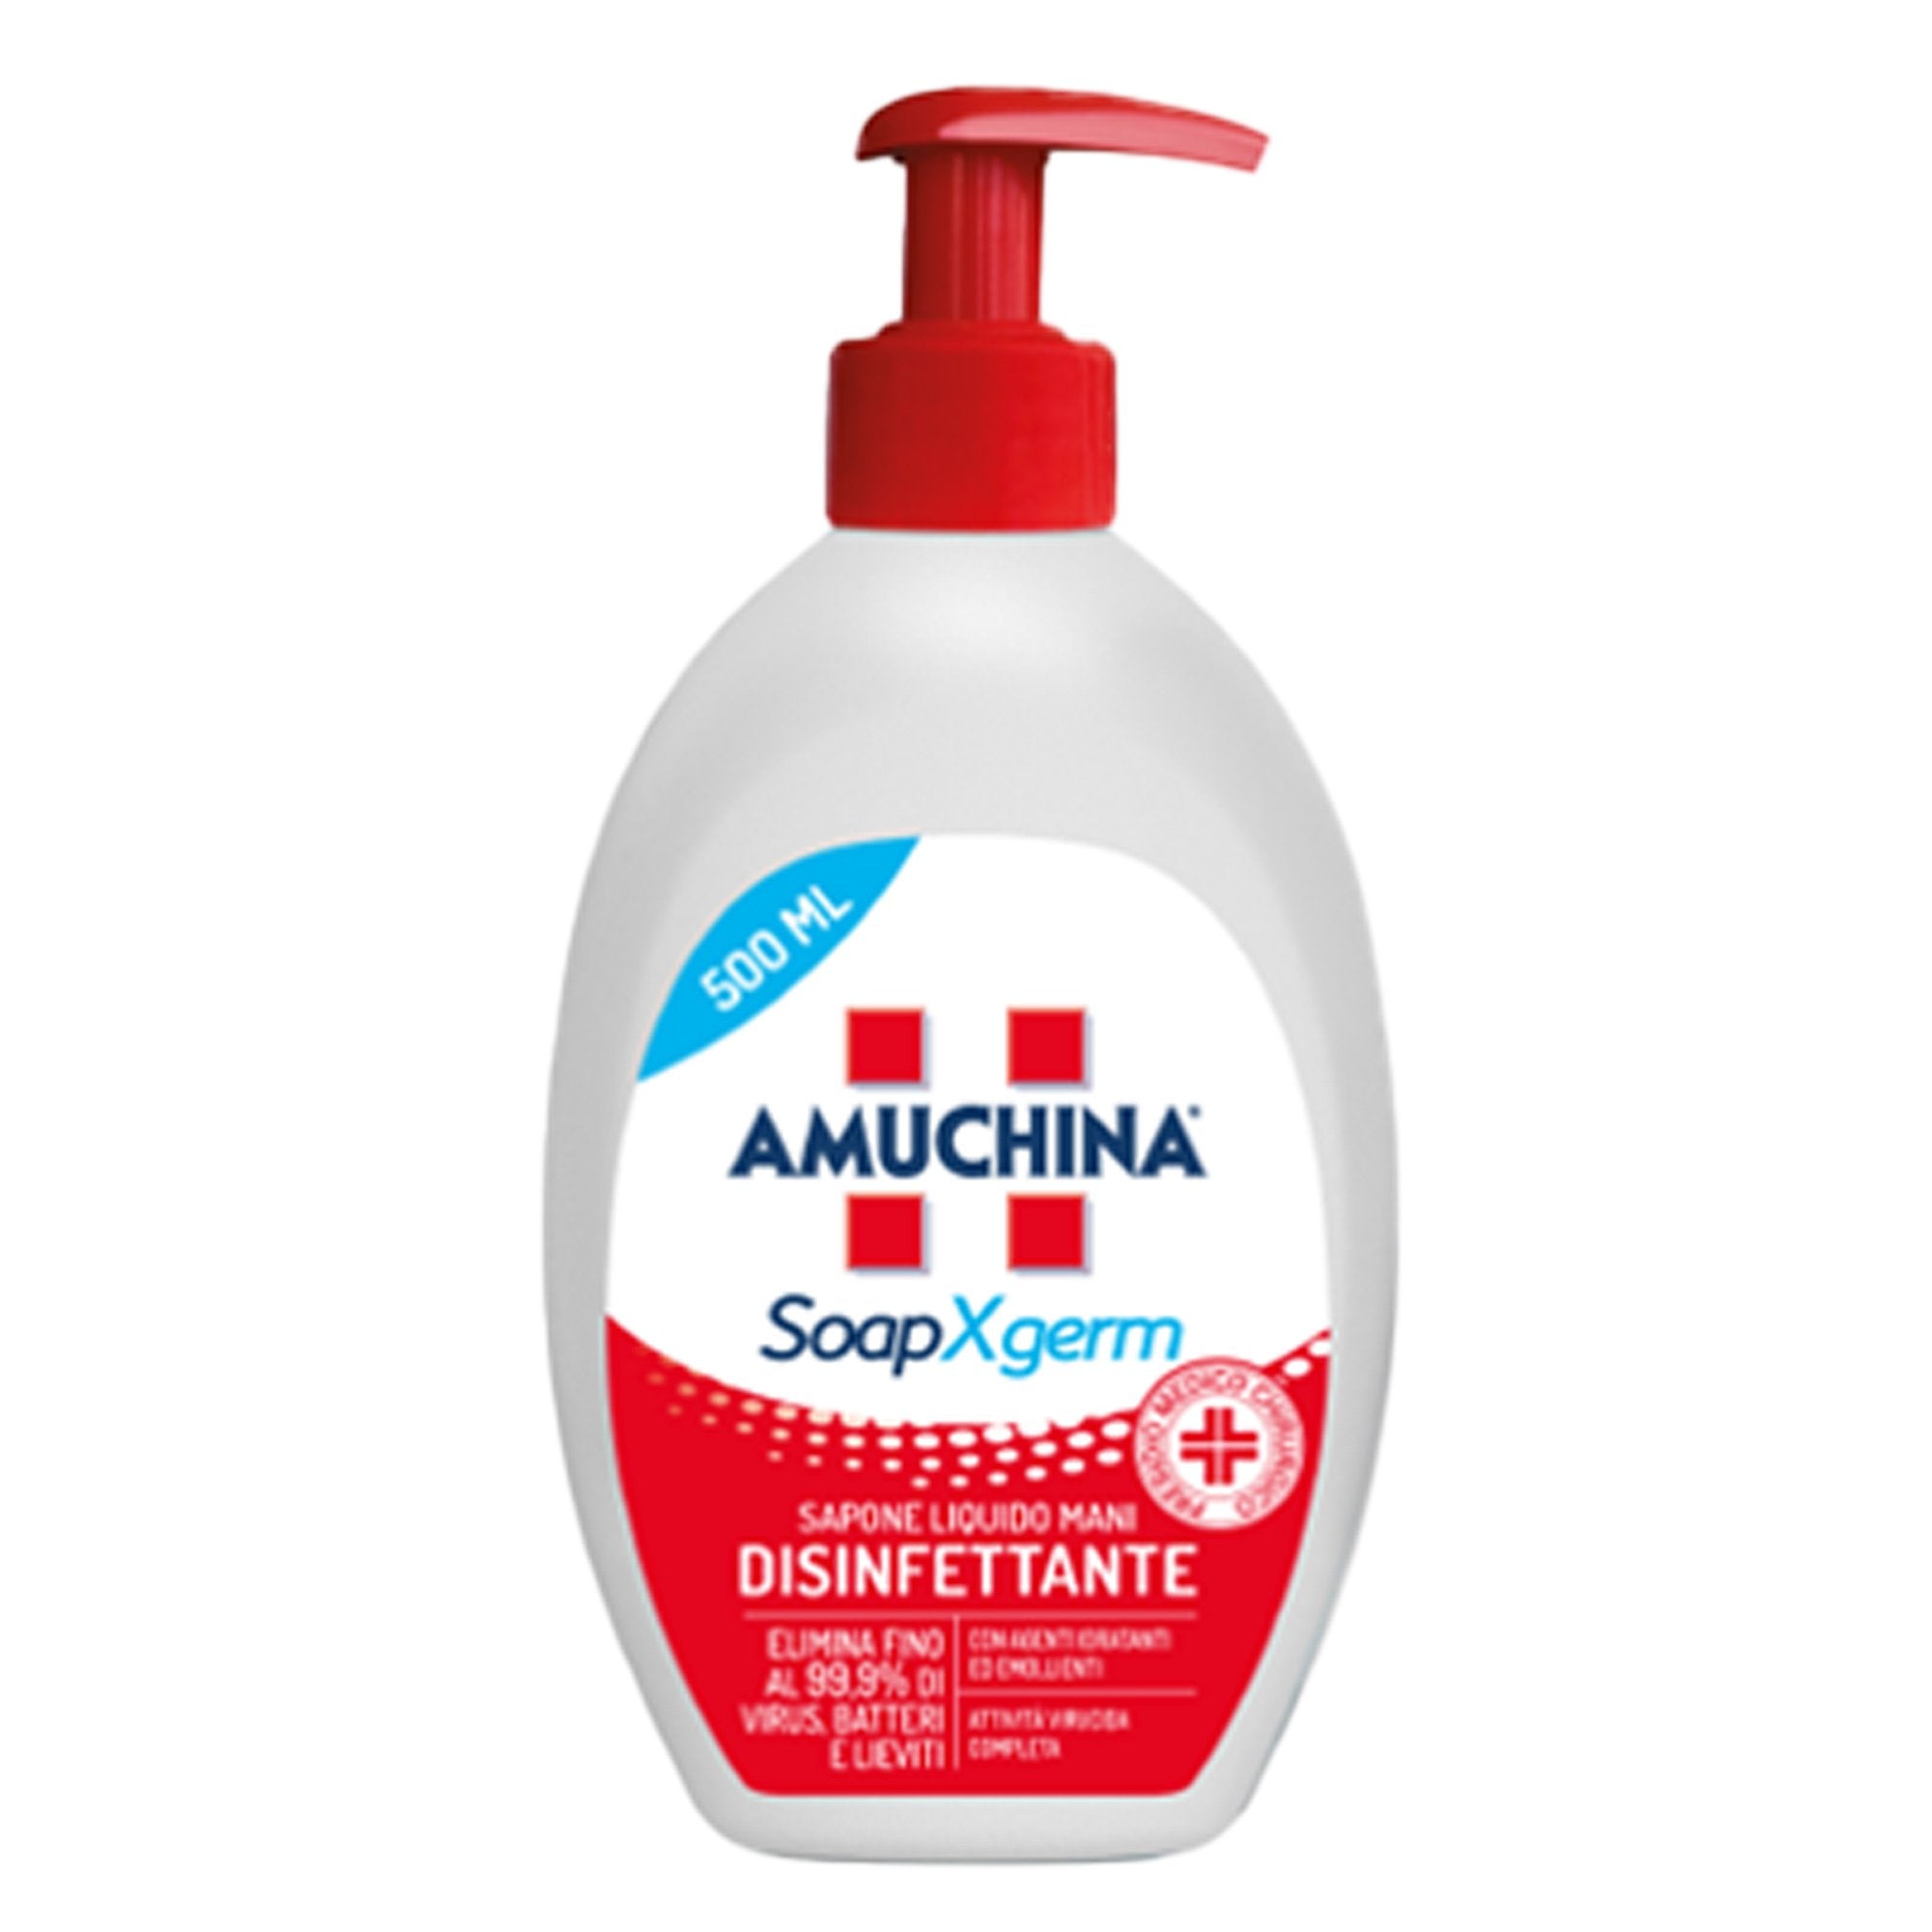 amuchina-professional-sapone-liquido-disinfettante-mani-soapxgerm-500ml-amuchina